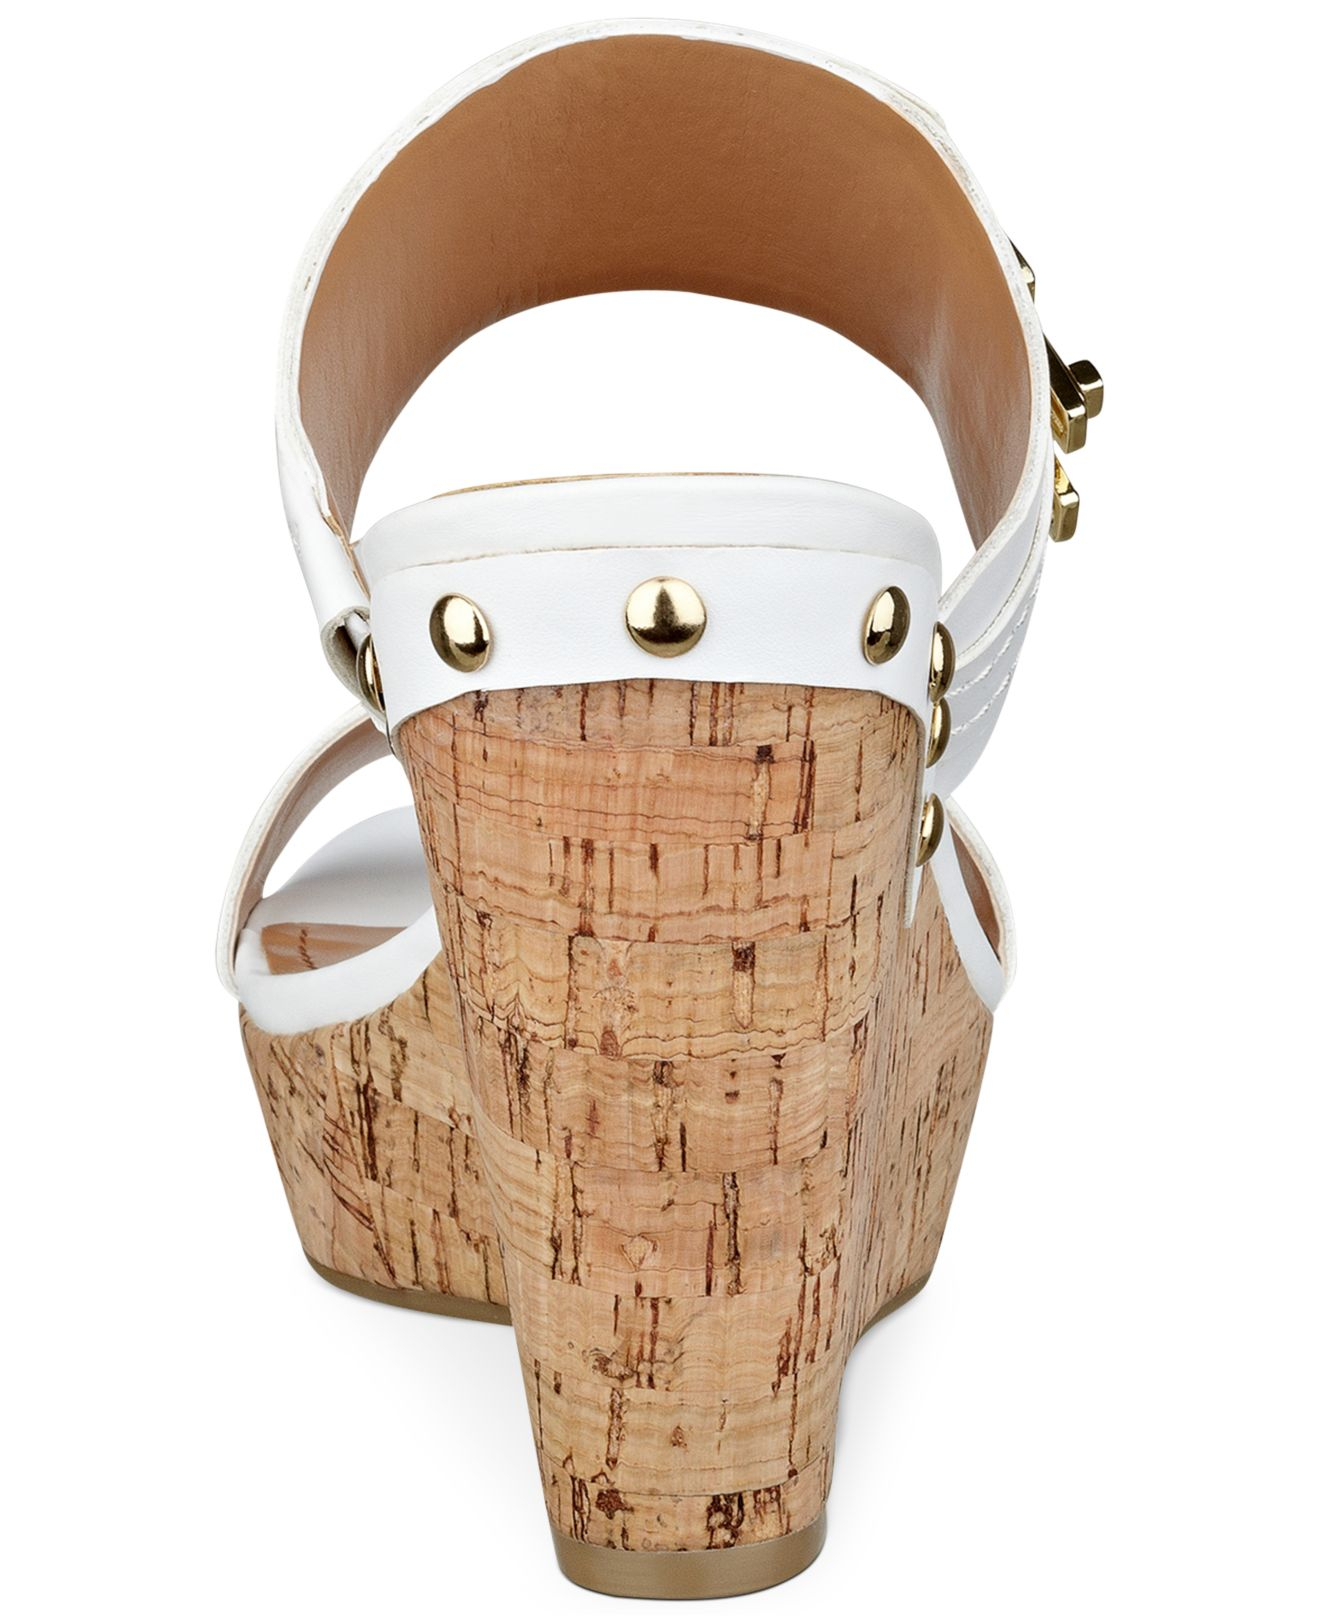 Tommy Hilfiger Women's Madasen Platform Wedge Sandals in White | Lyst